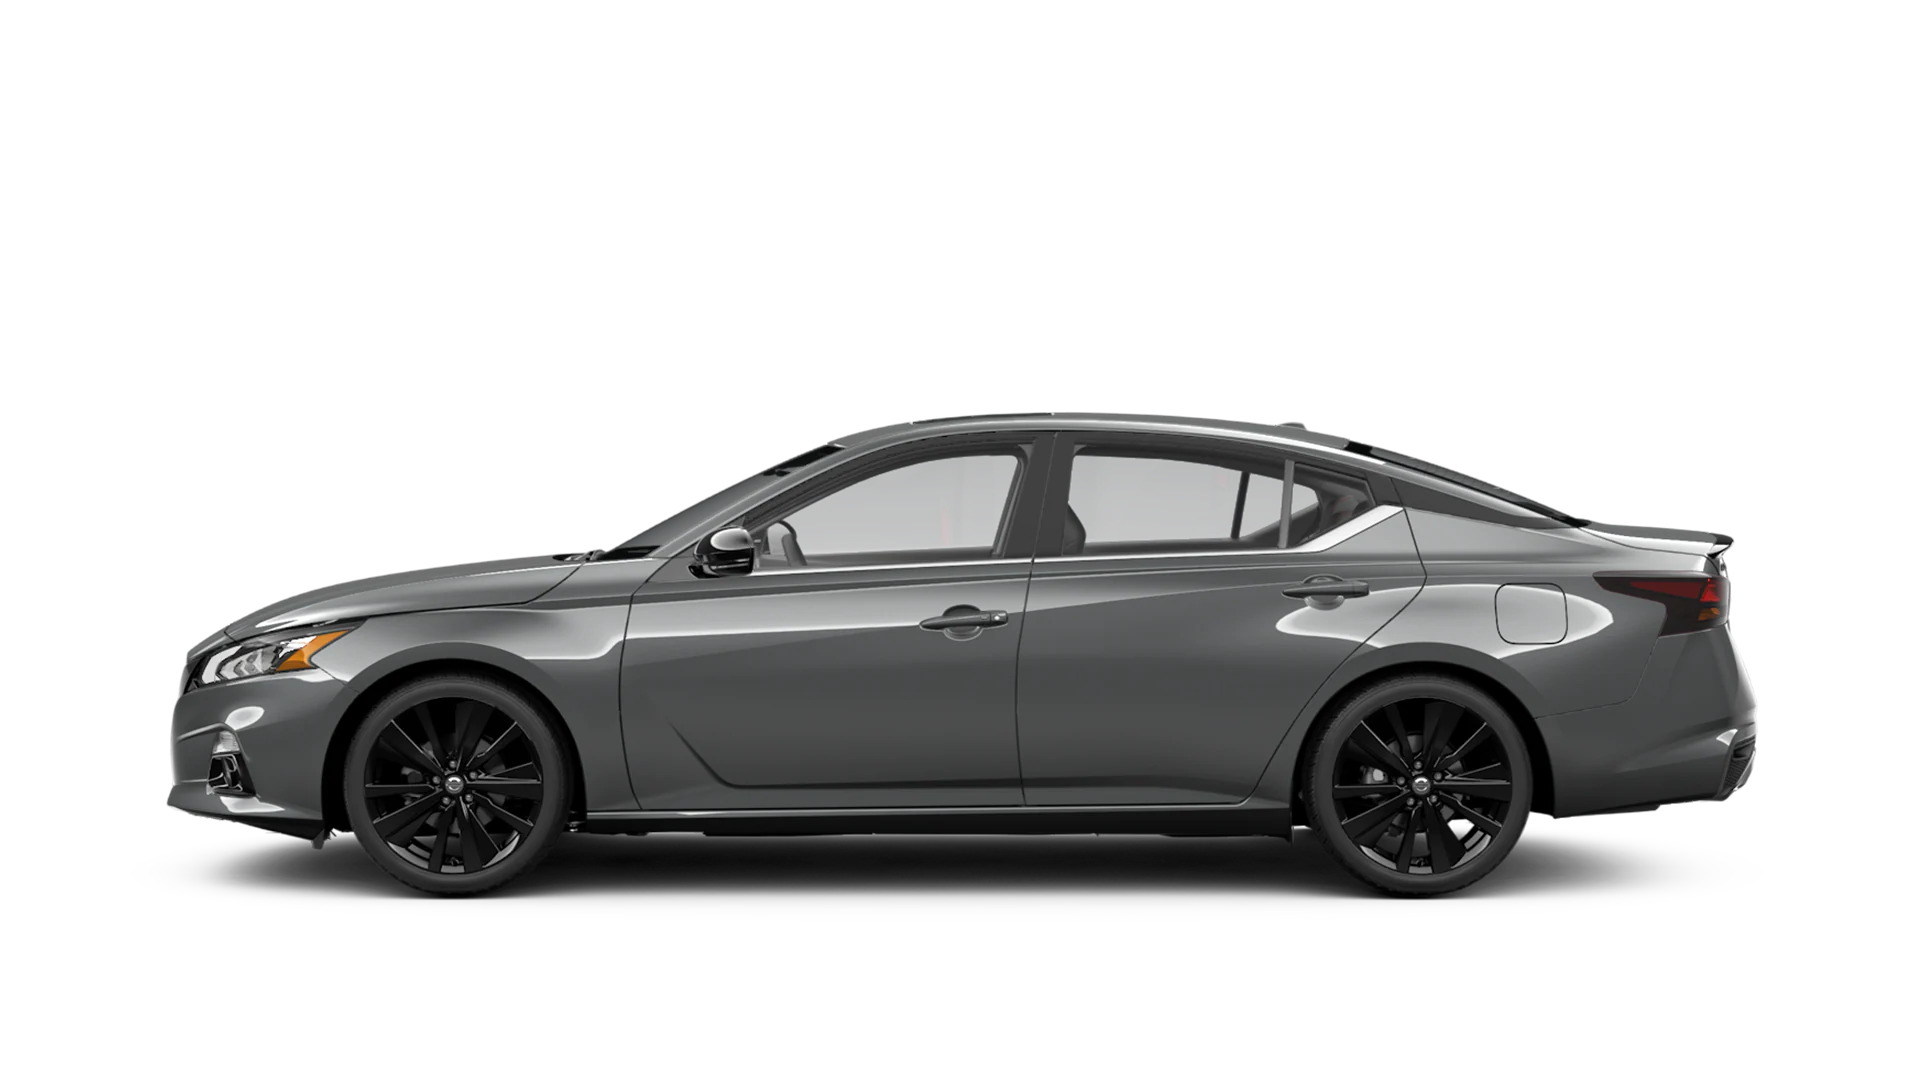 2022 Altima SR Midnight Edition INTELLIGENT AWD | Natchez Nissan in Natchez MS